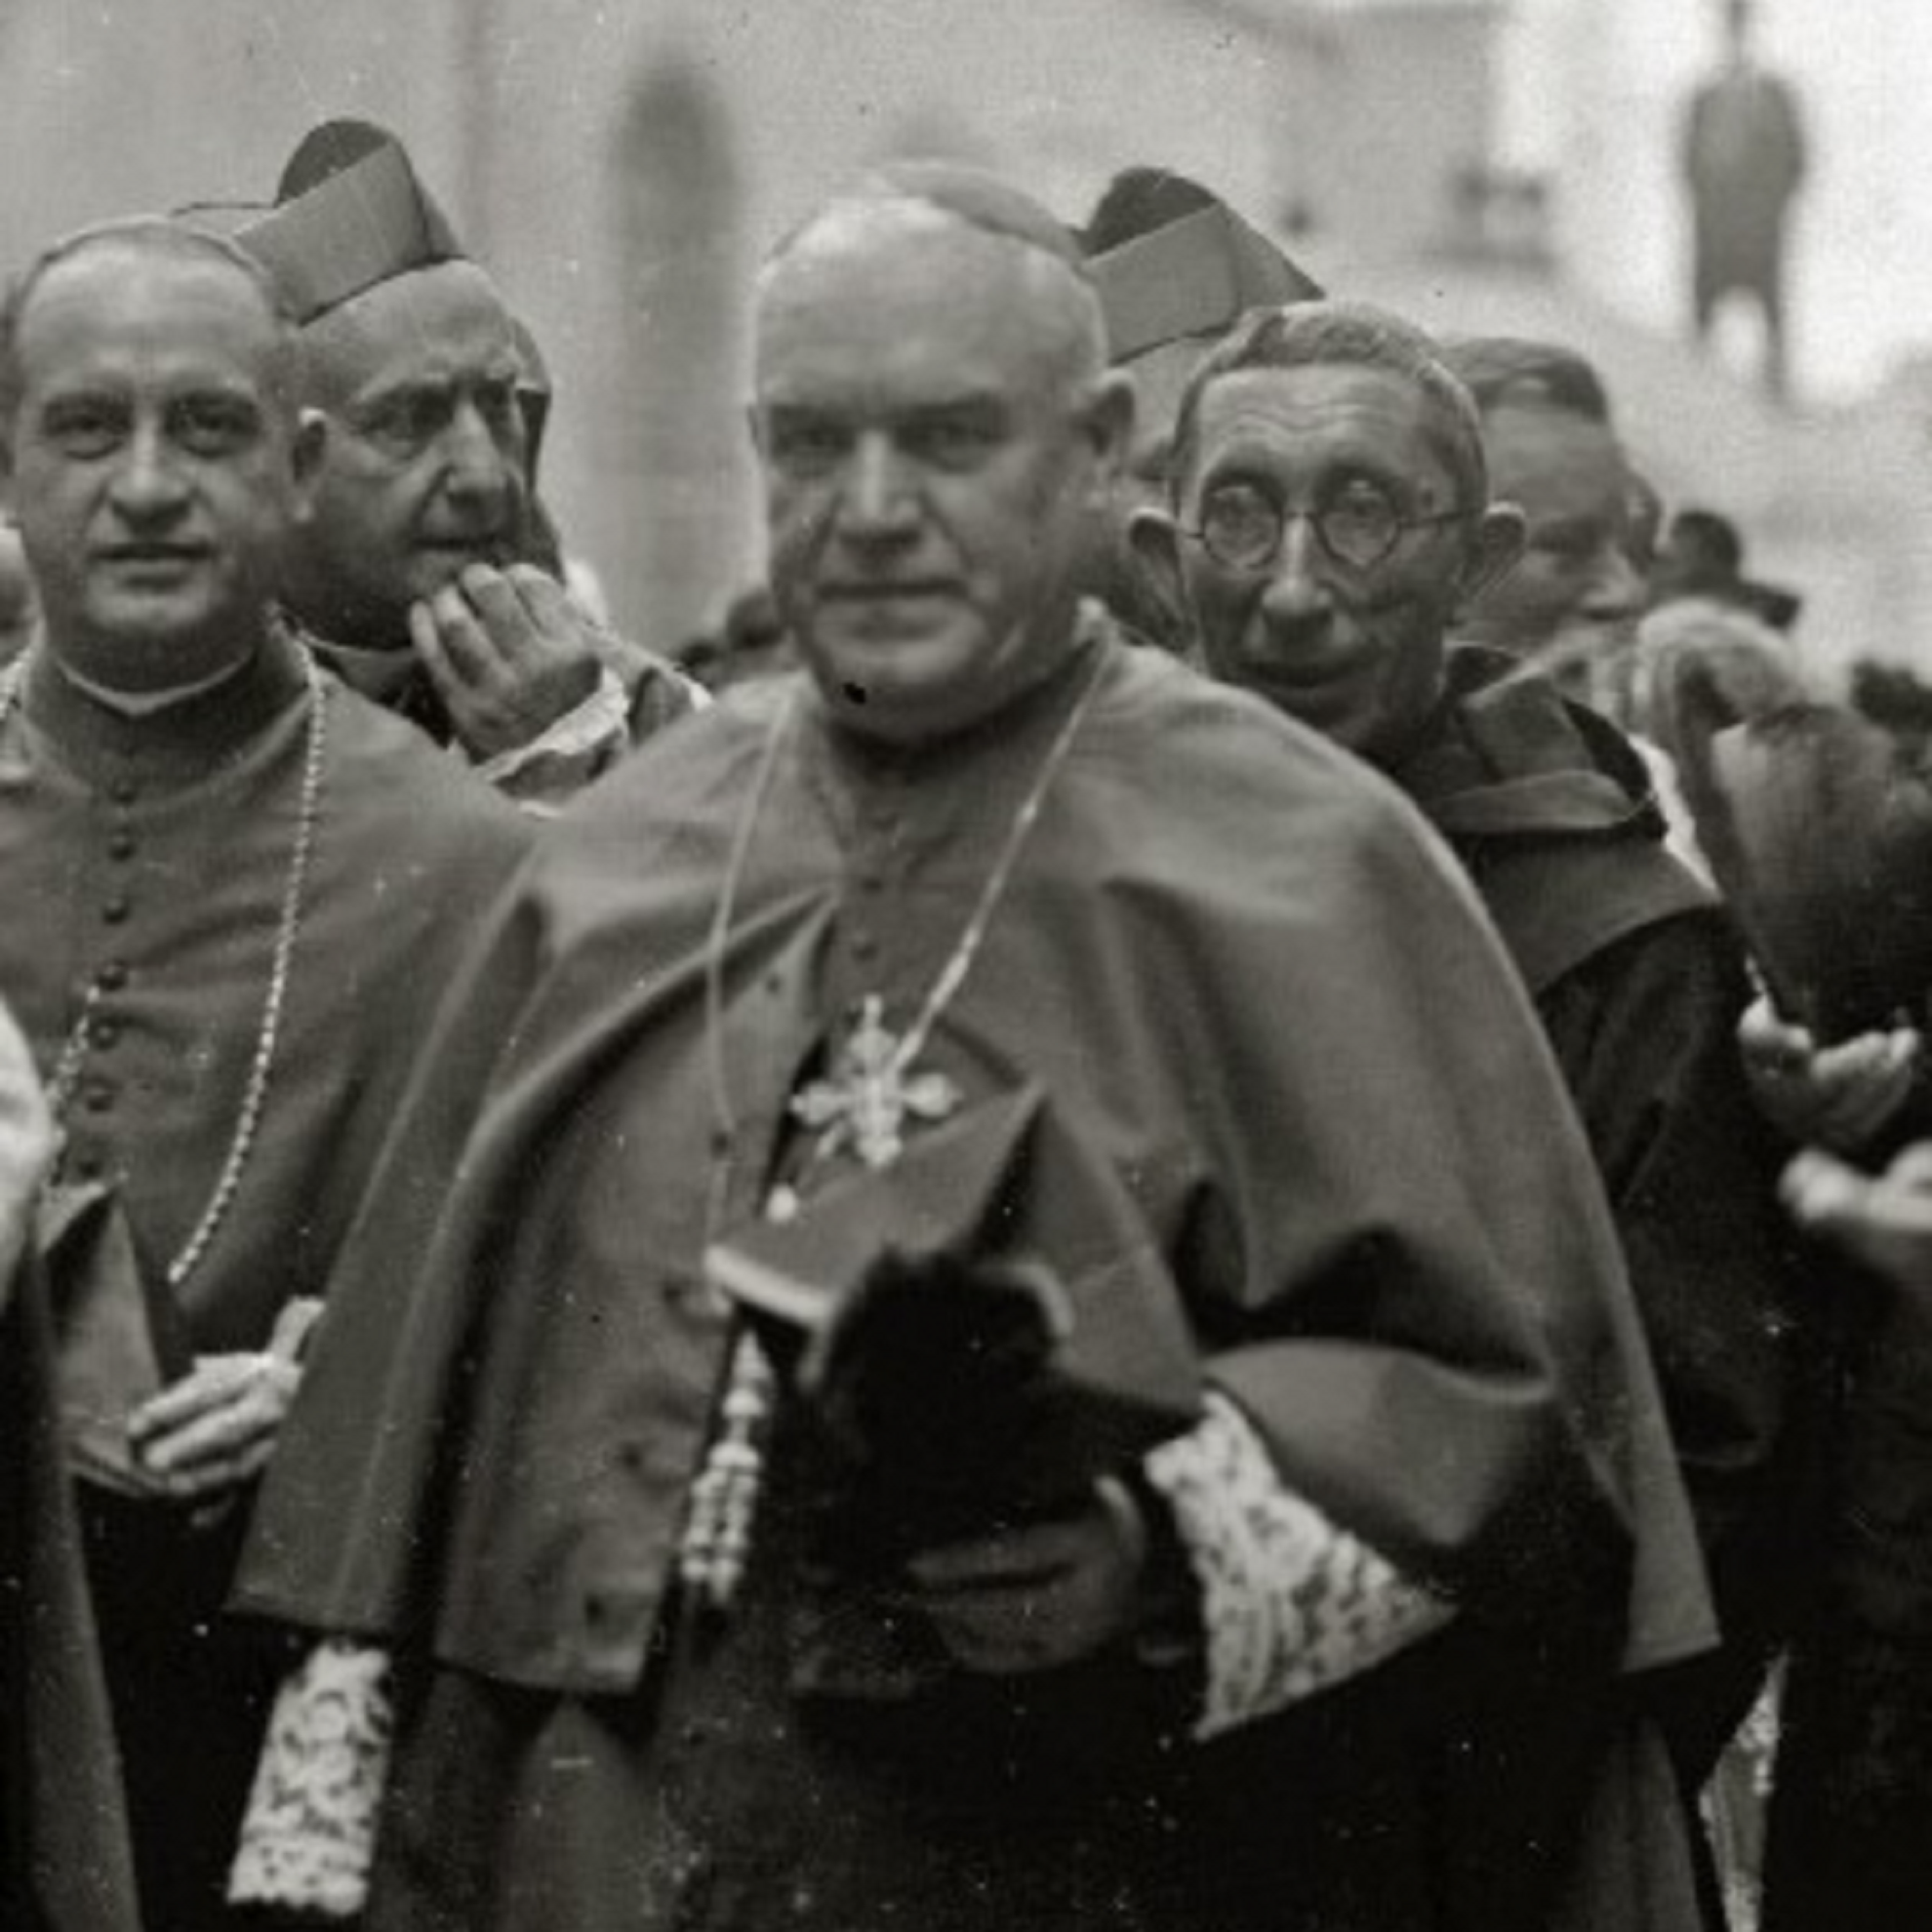 Nace Gomà i Tomàs, el cardenal que se arrepintió de dar apoyo a Franco